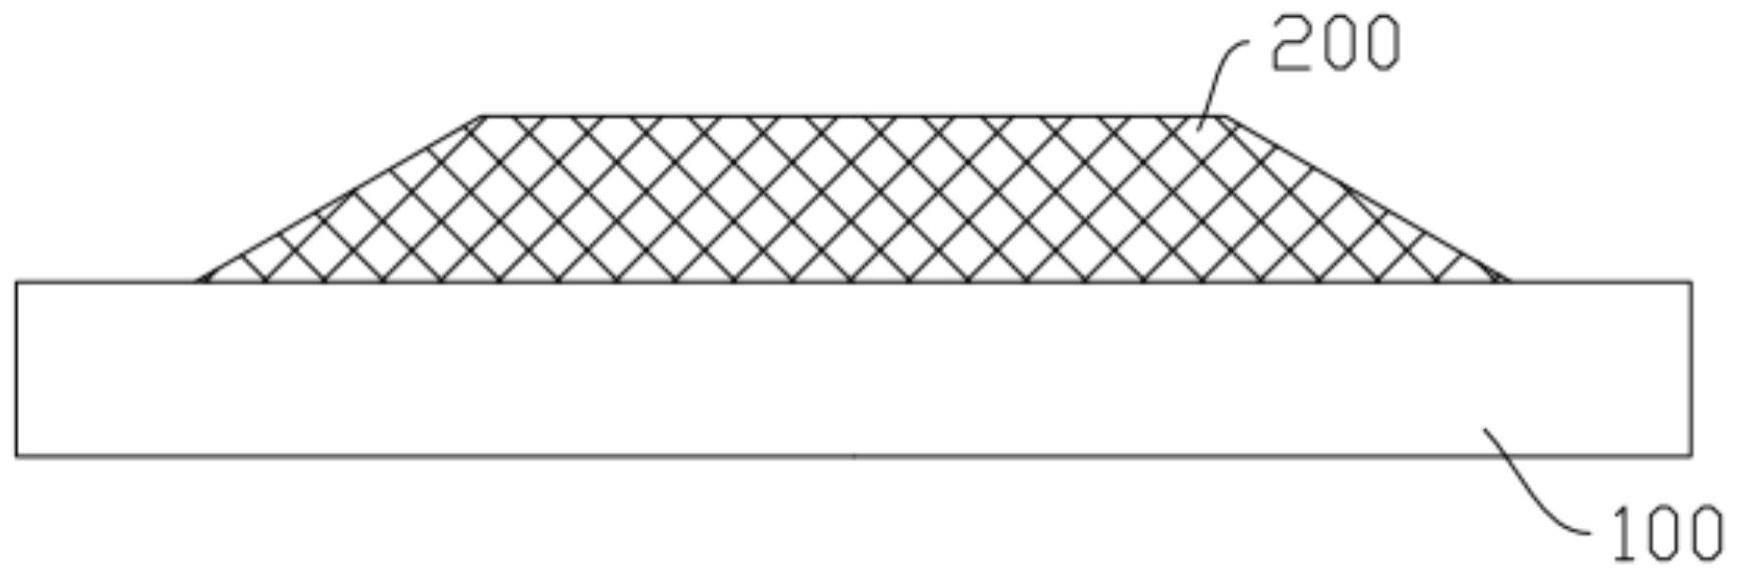 OC桥点坡度角的测量方法与流程